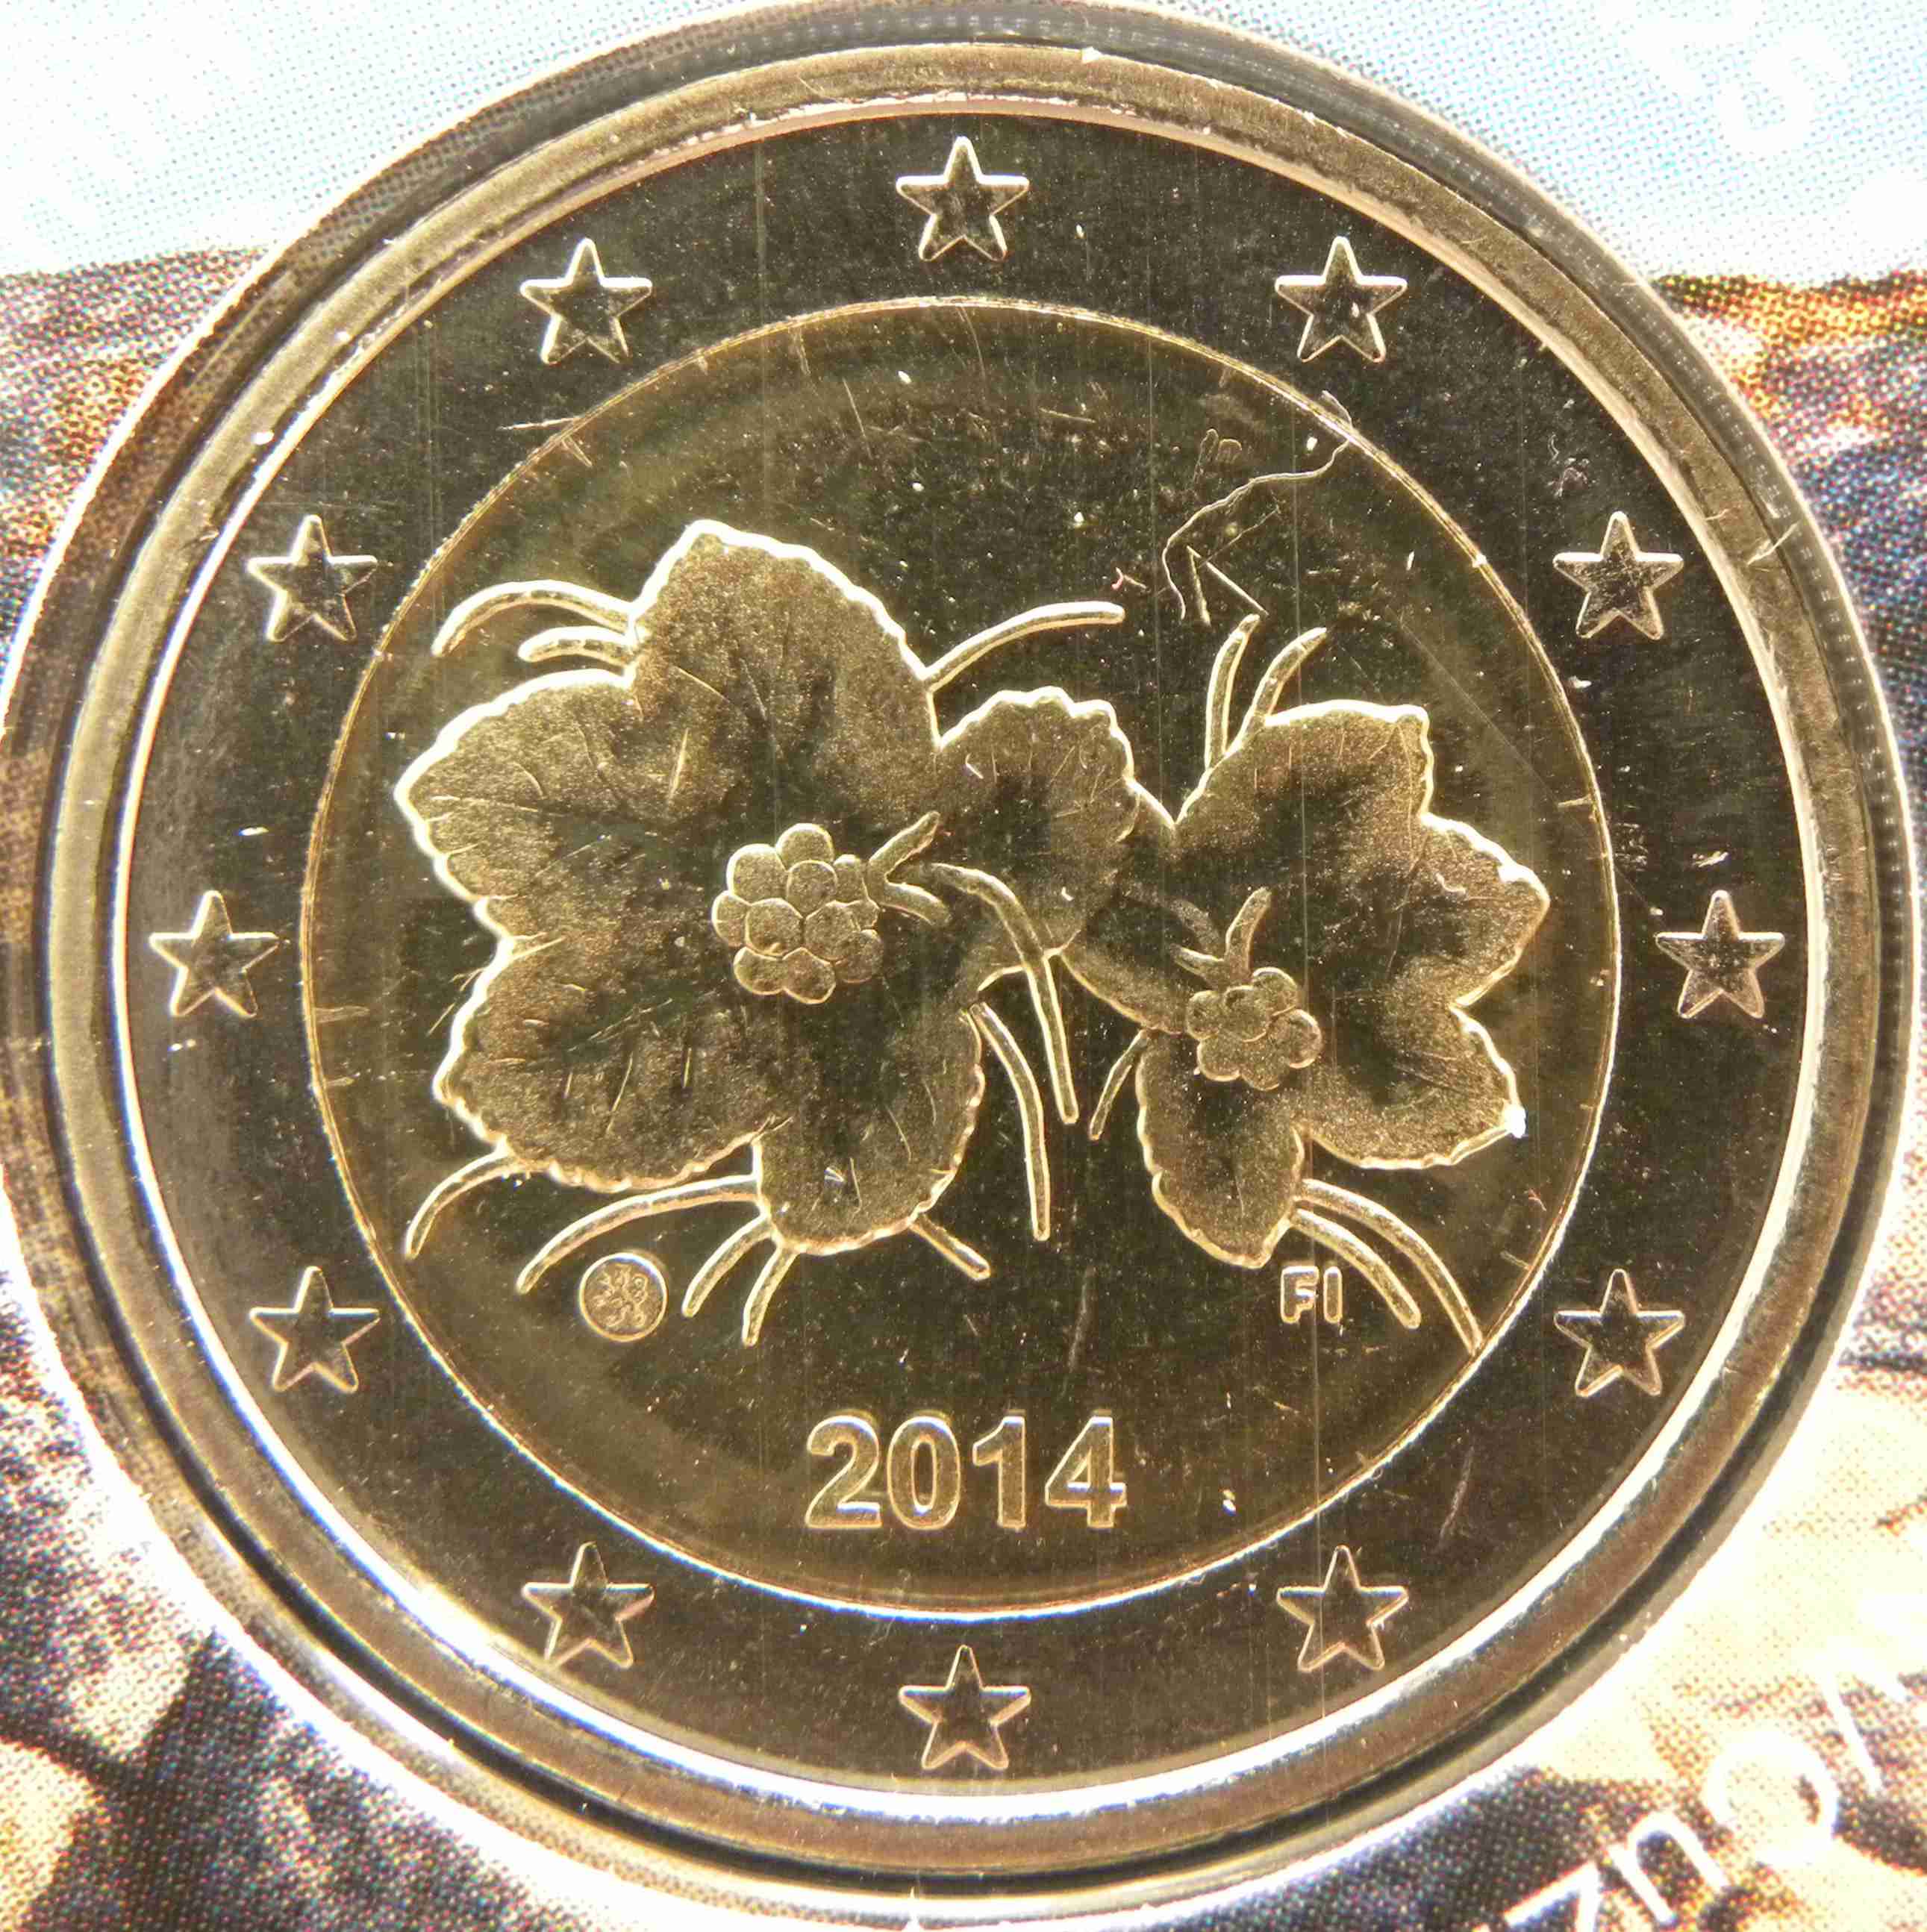 Finland 2 Euro Coin 2014 - euro-coins.tv - The Online ...